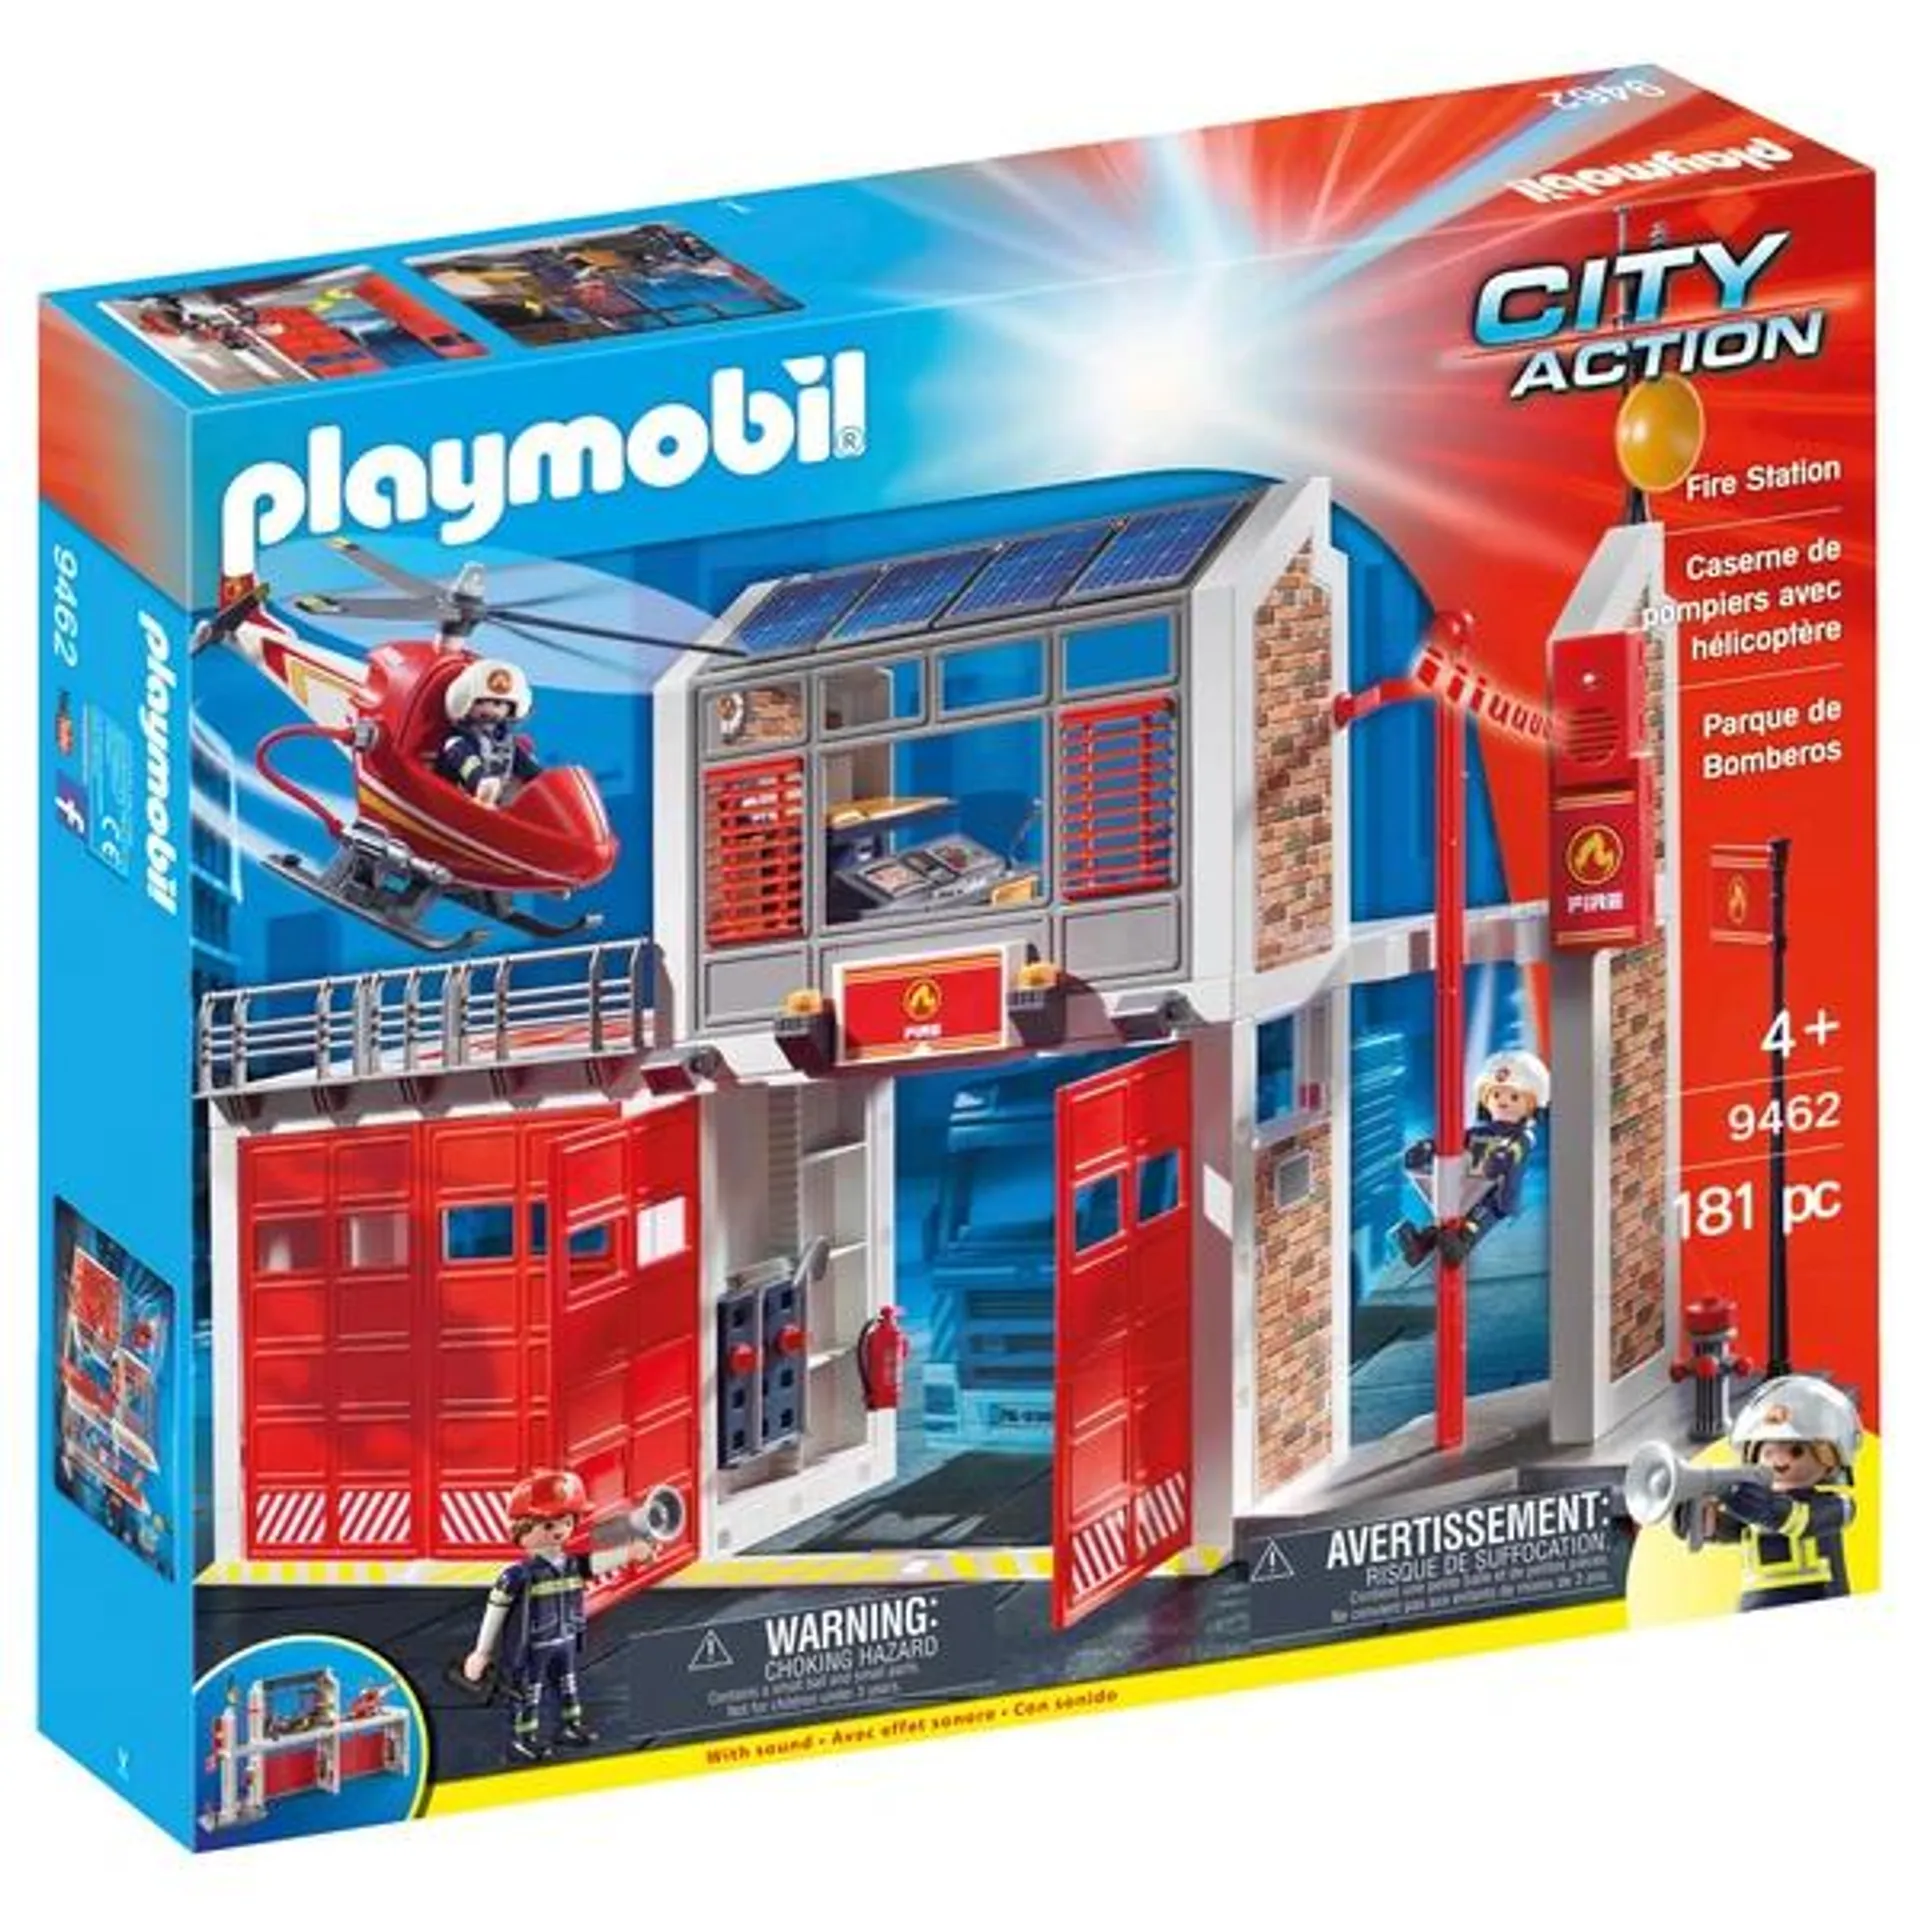 Playmobil - CIty Action 9432 Caserne de Pompiers avec Hélicoptère